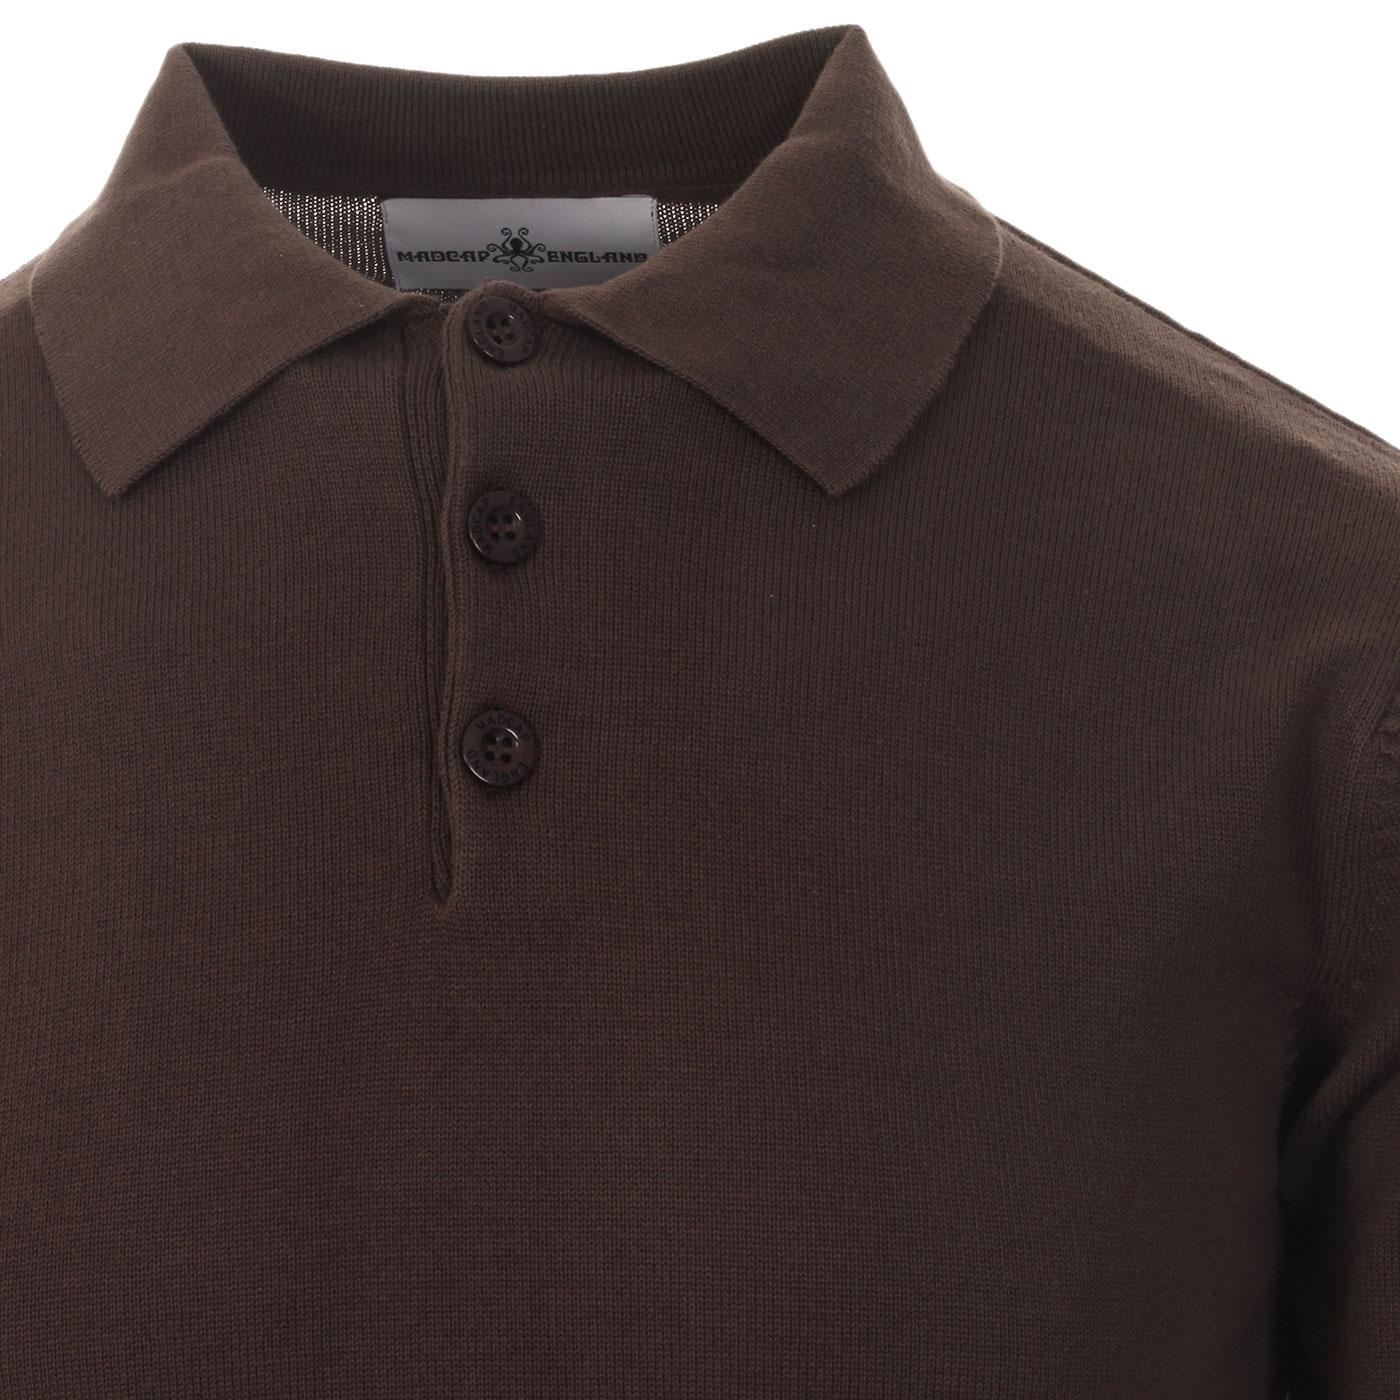 MADCAP ENGLAND Brando 60s Mod Knit Polo Shirt Graphite Brown